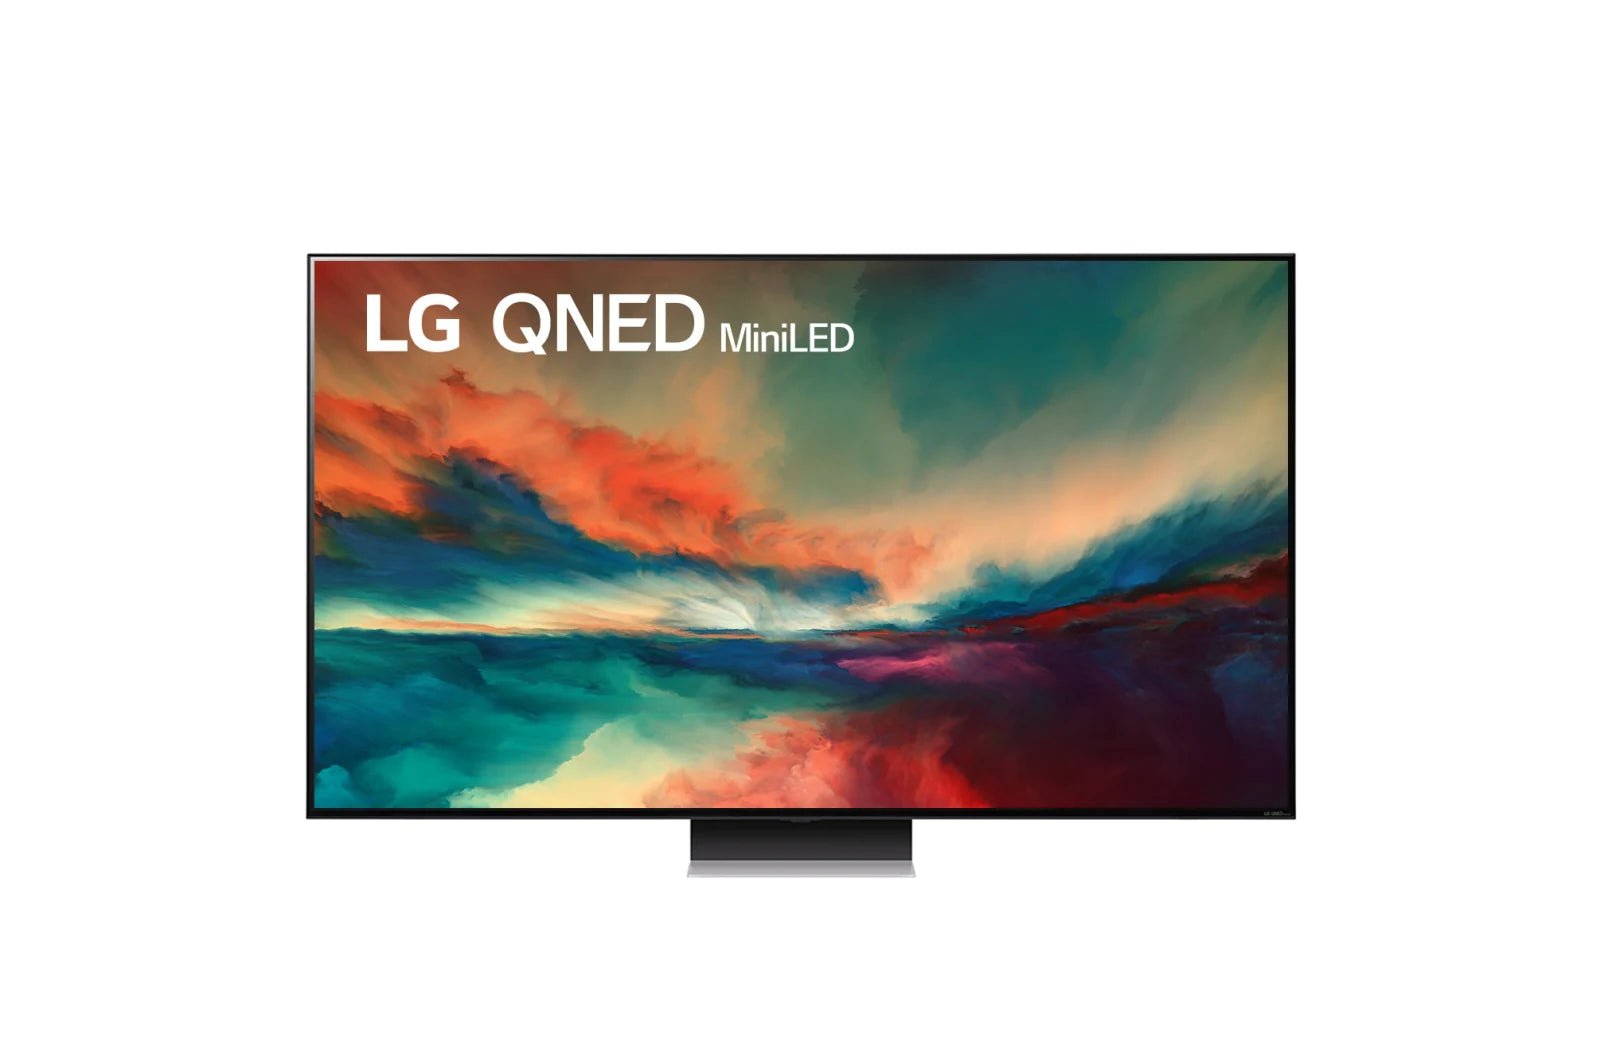 LG 樂金 QNED86 Mini-LED 4K 智能電視